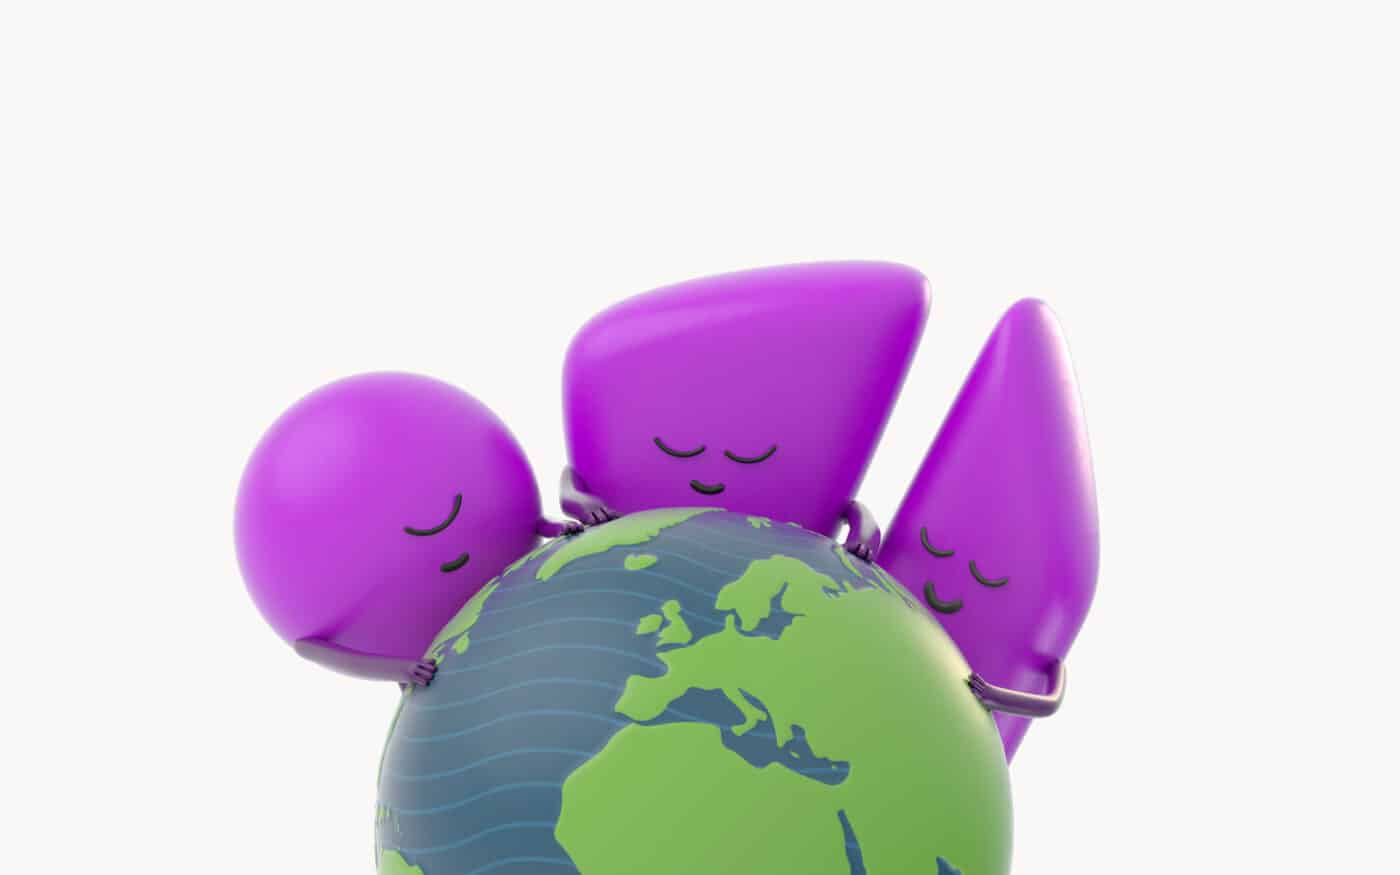 3 petits personnages 3D cajolent la planète